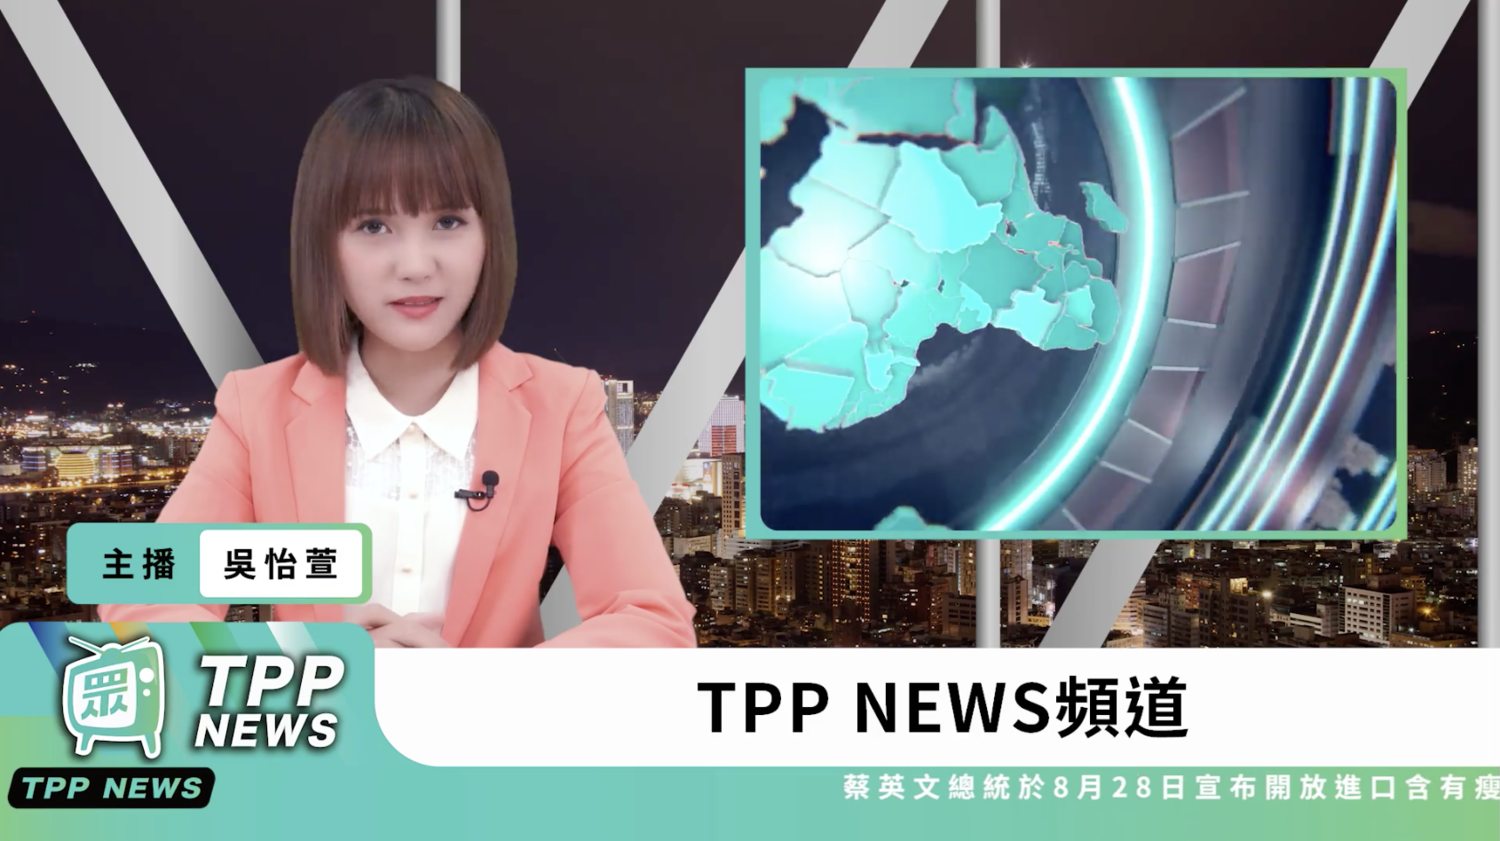 強化空軍 民眾黨自製「TPP News」拼網路聲量